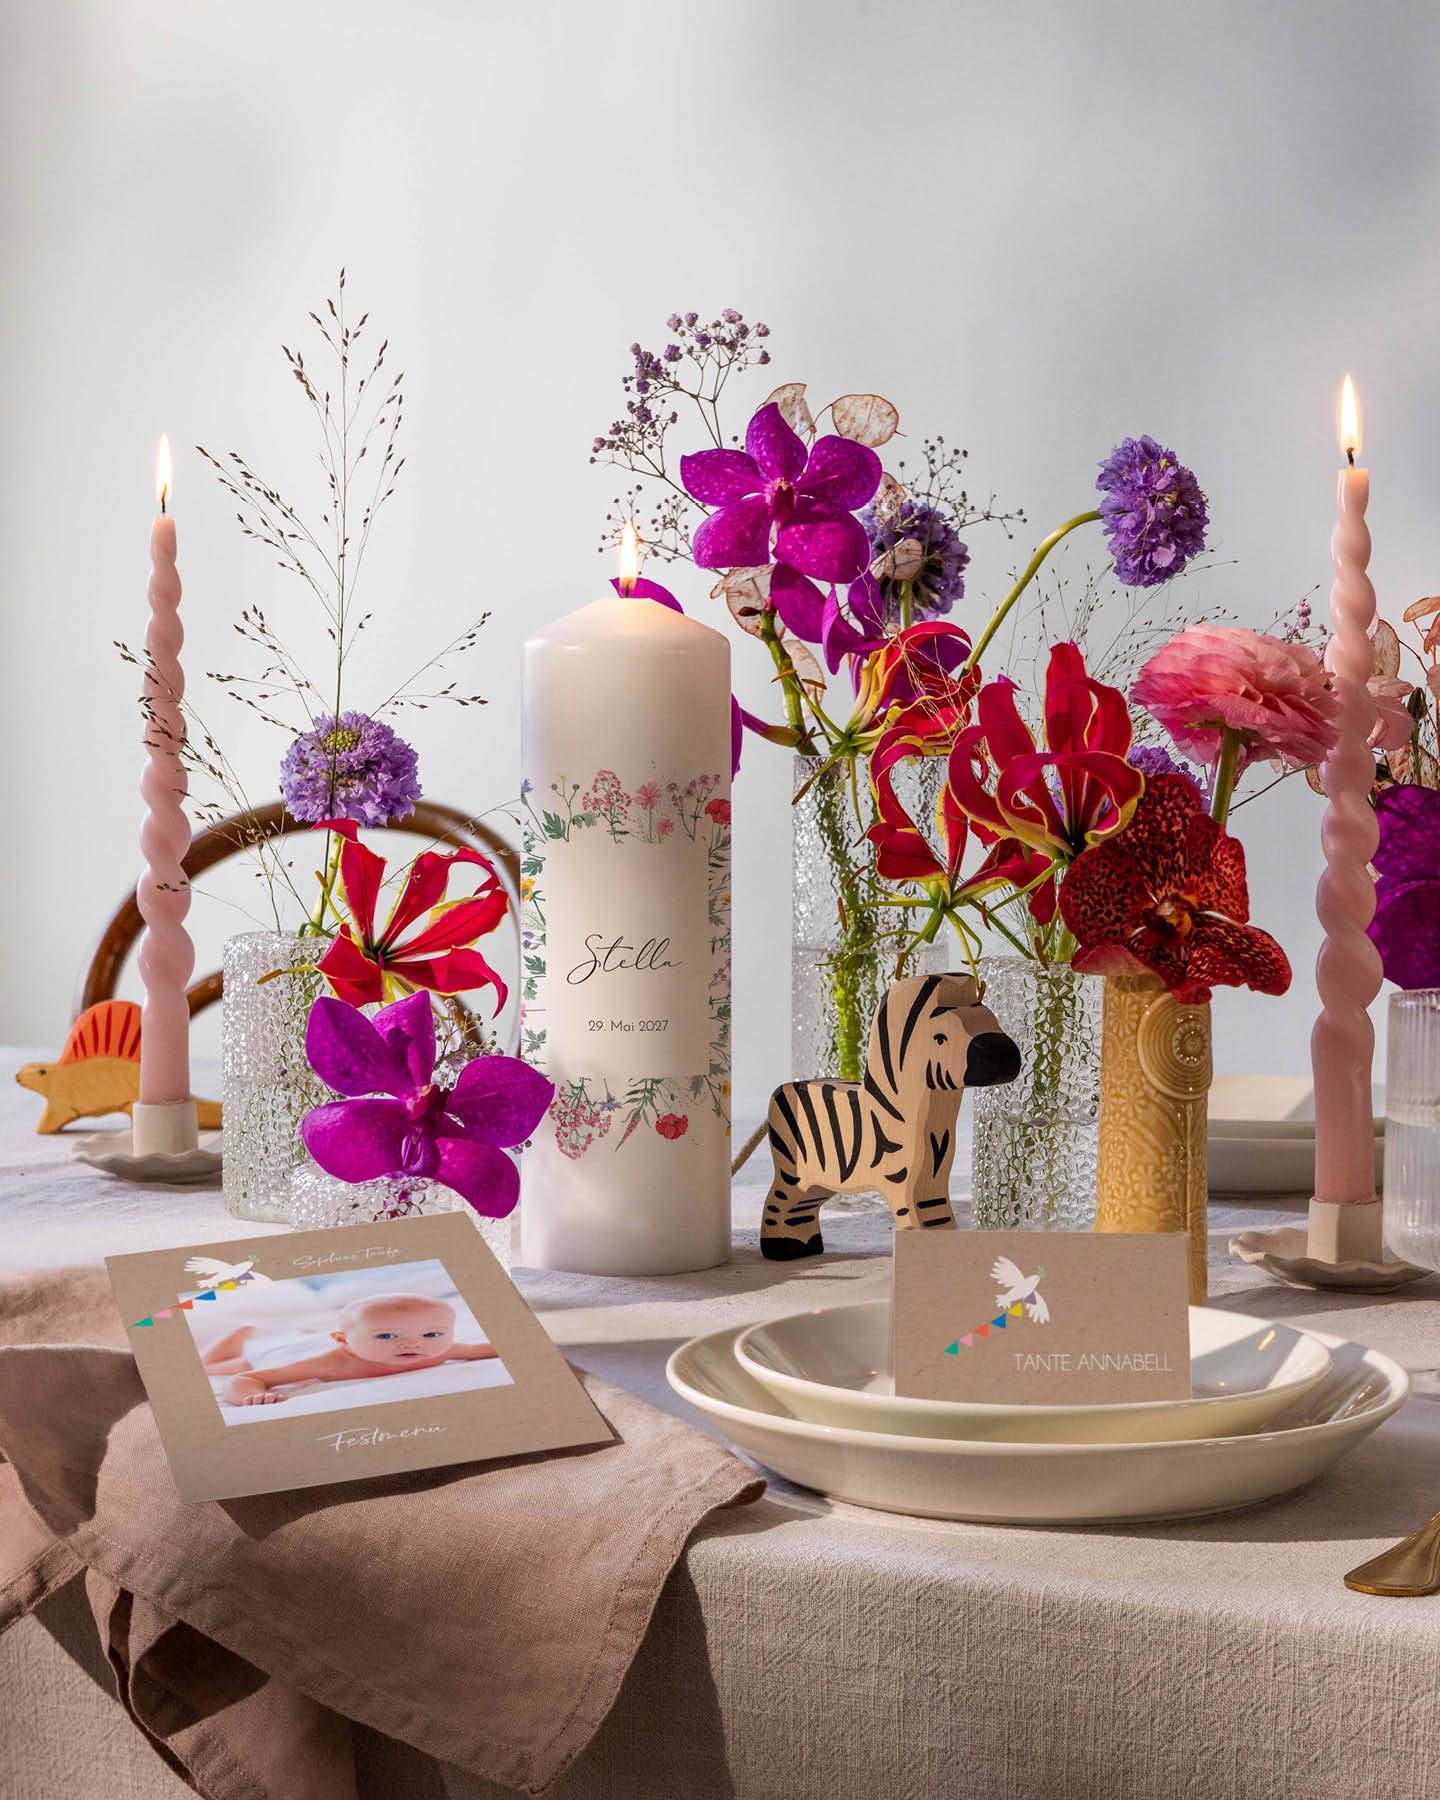 Die Festtafel zur Namensgebungsfeier ist mit roten, violetten und pinken Blumen dekoriert. Eine Lebenskerze, eine Menükarte und eine Namenskarte runden den Sitzplatz der Gäste ab.